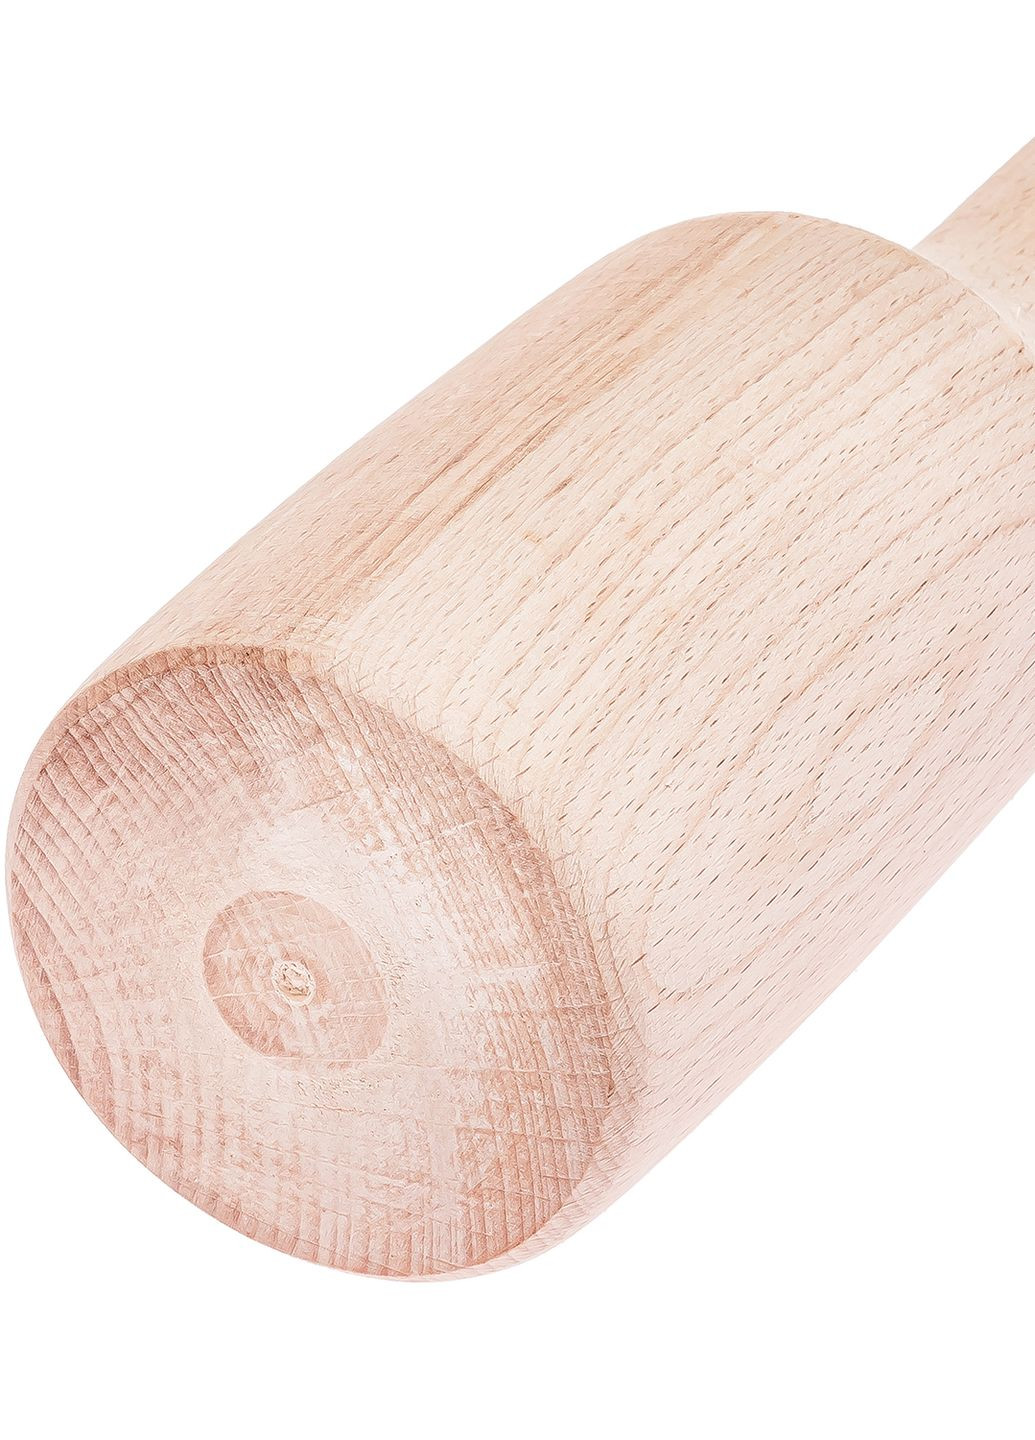 Толкушка картофелемялка фигурная средняя для картошки деревянная 30 см Woodly (274382573)